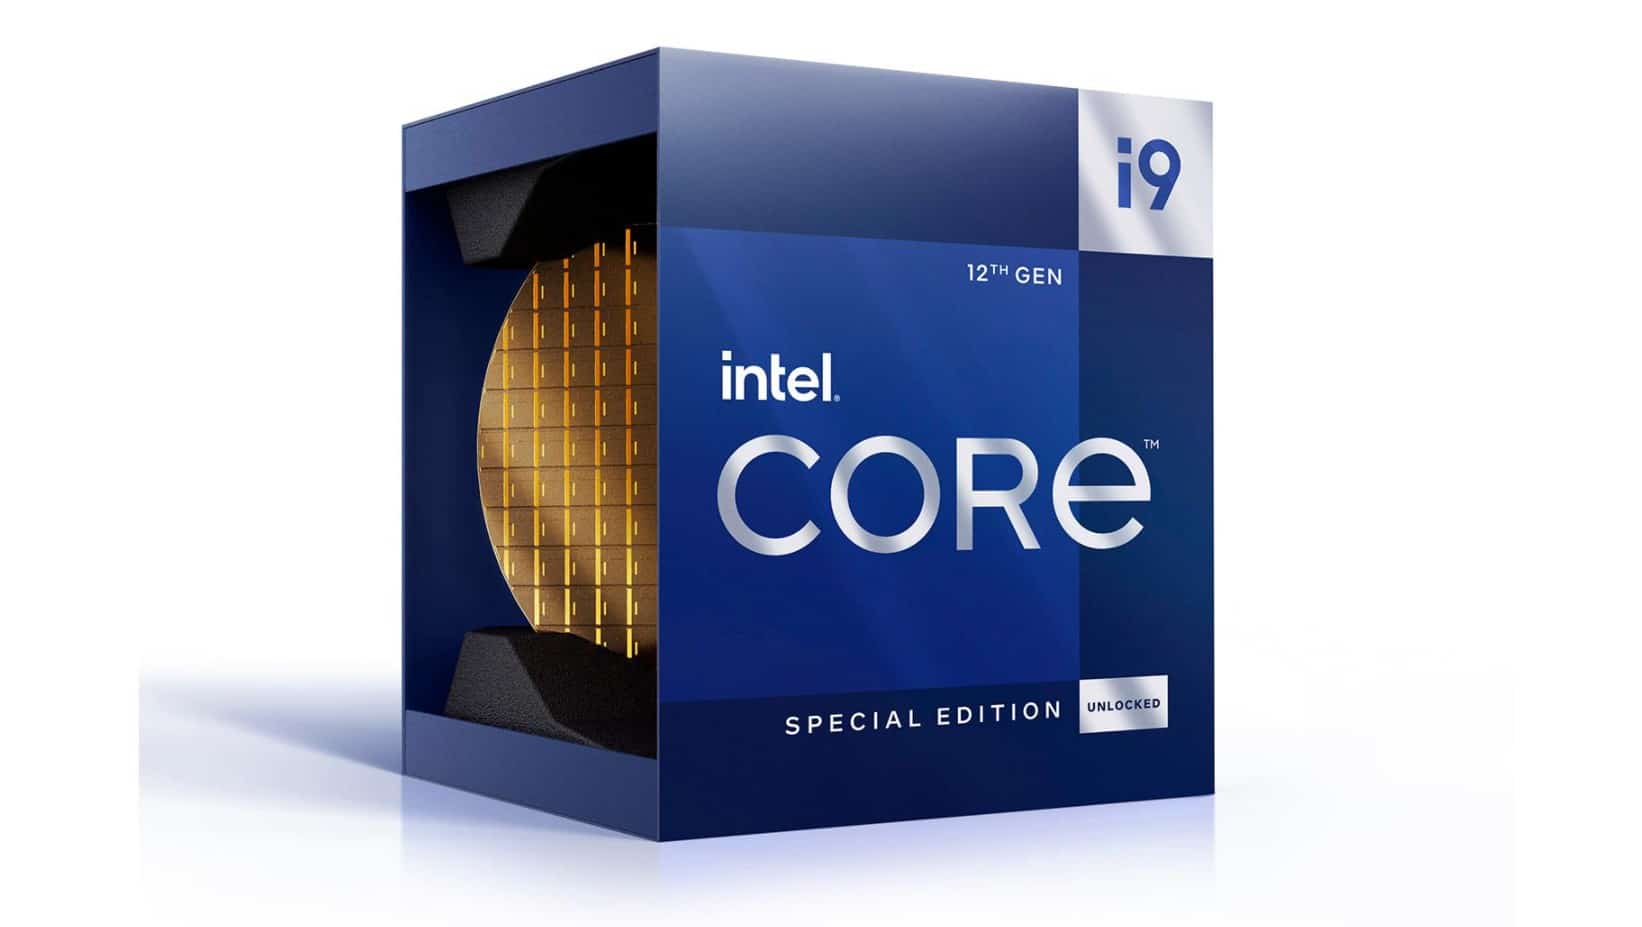 Intels Core i9-12900KS